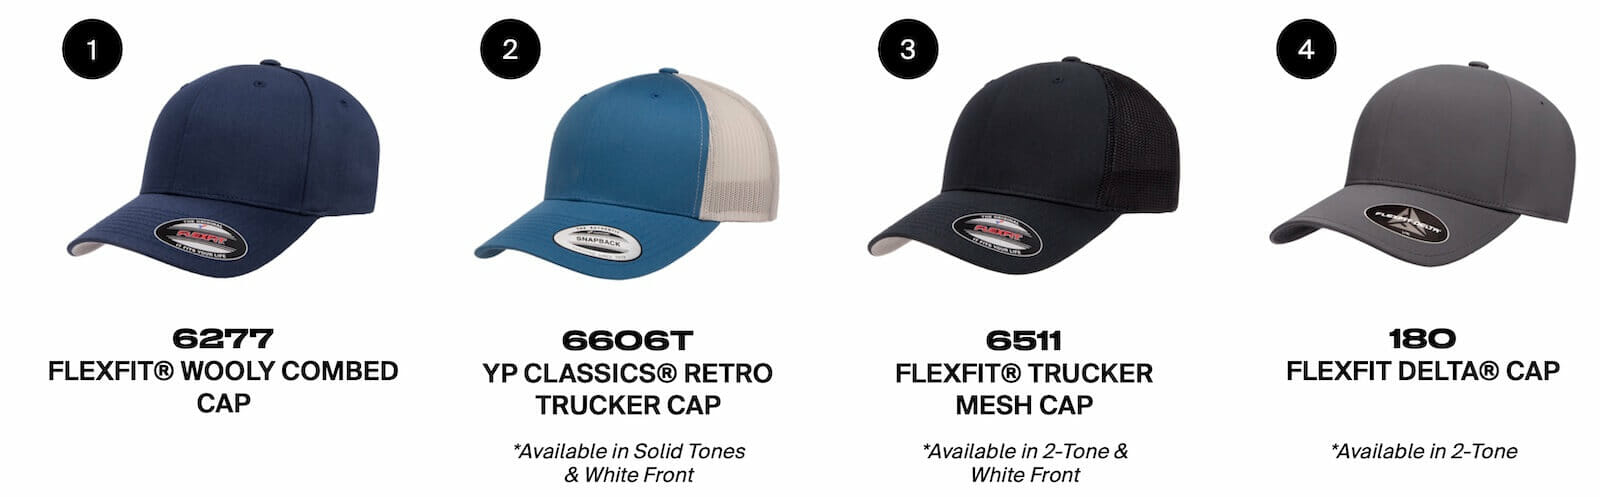 flexfit custom hat options